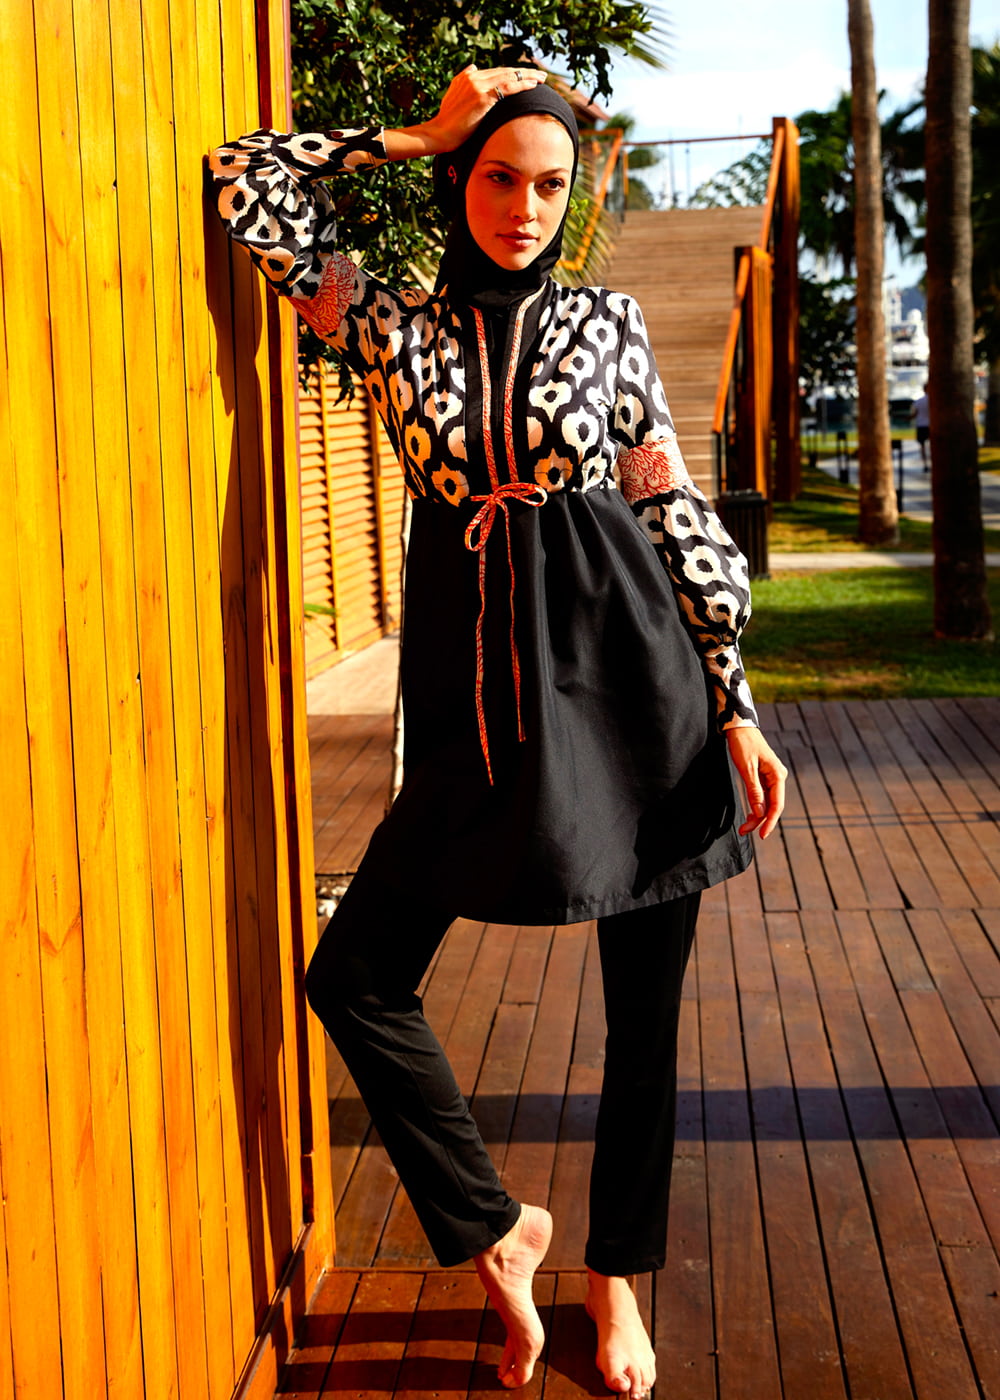 burkini-neat-pattern-design-black-white-woven-fabrics-mayovera-8098-11-B